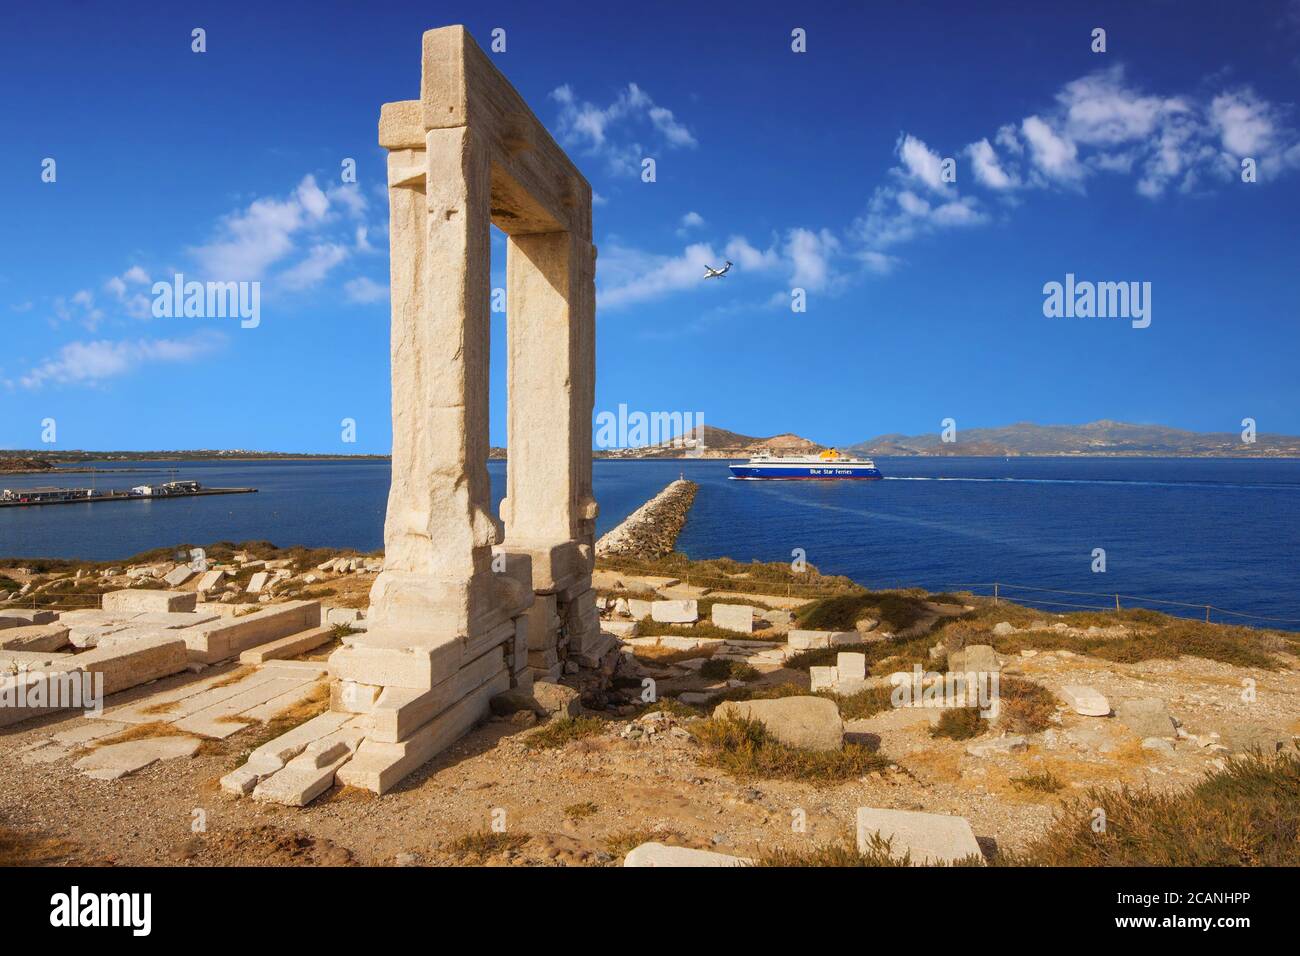 Le monument historique de Naxos - porte de Portara dans le matin Banque D'Images